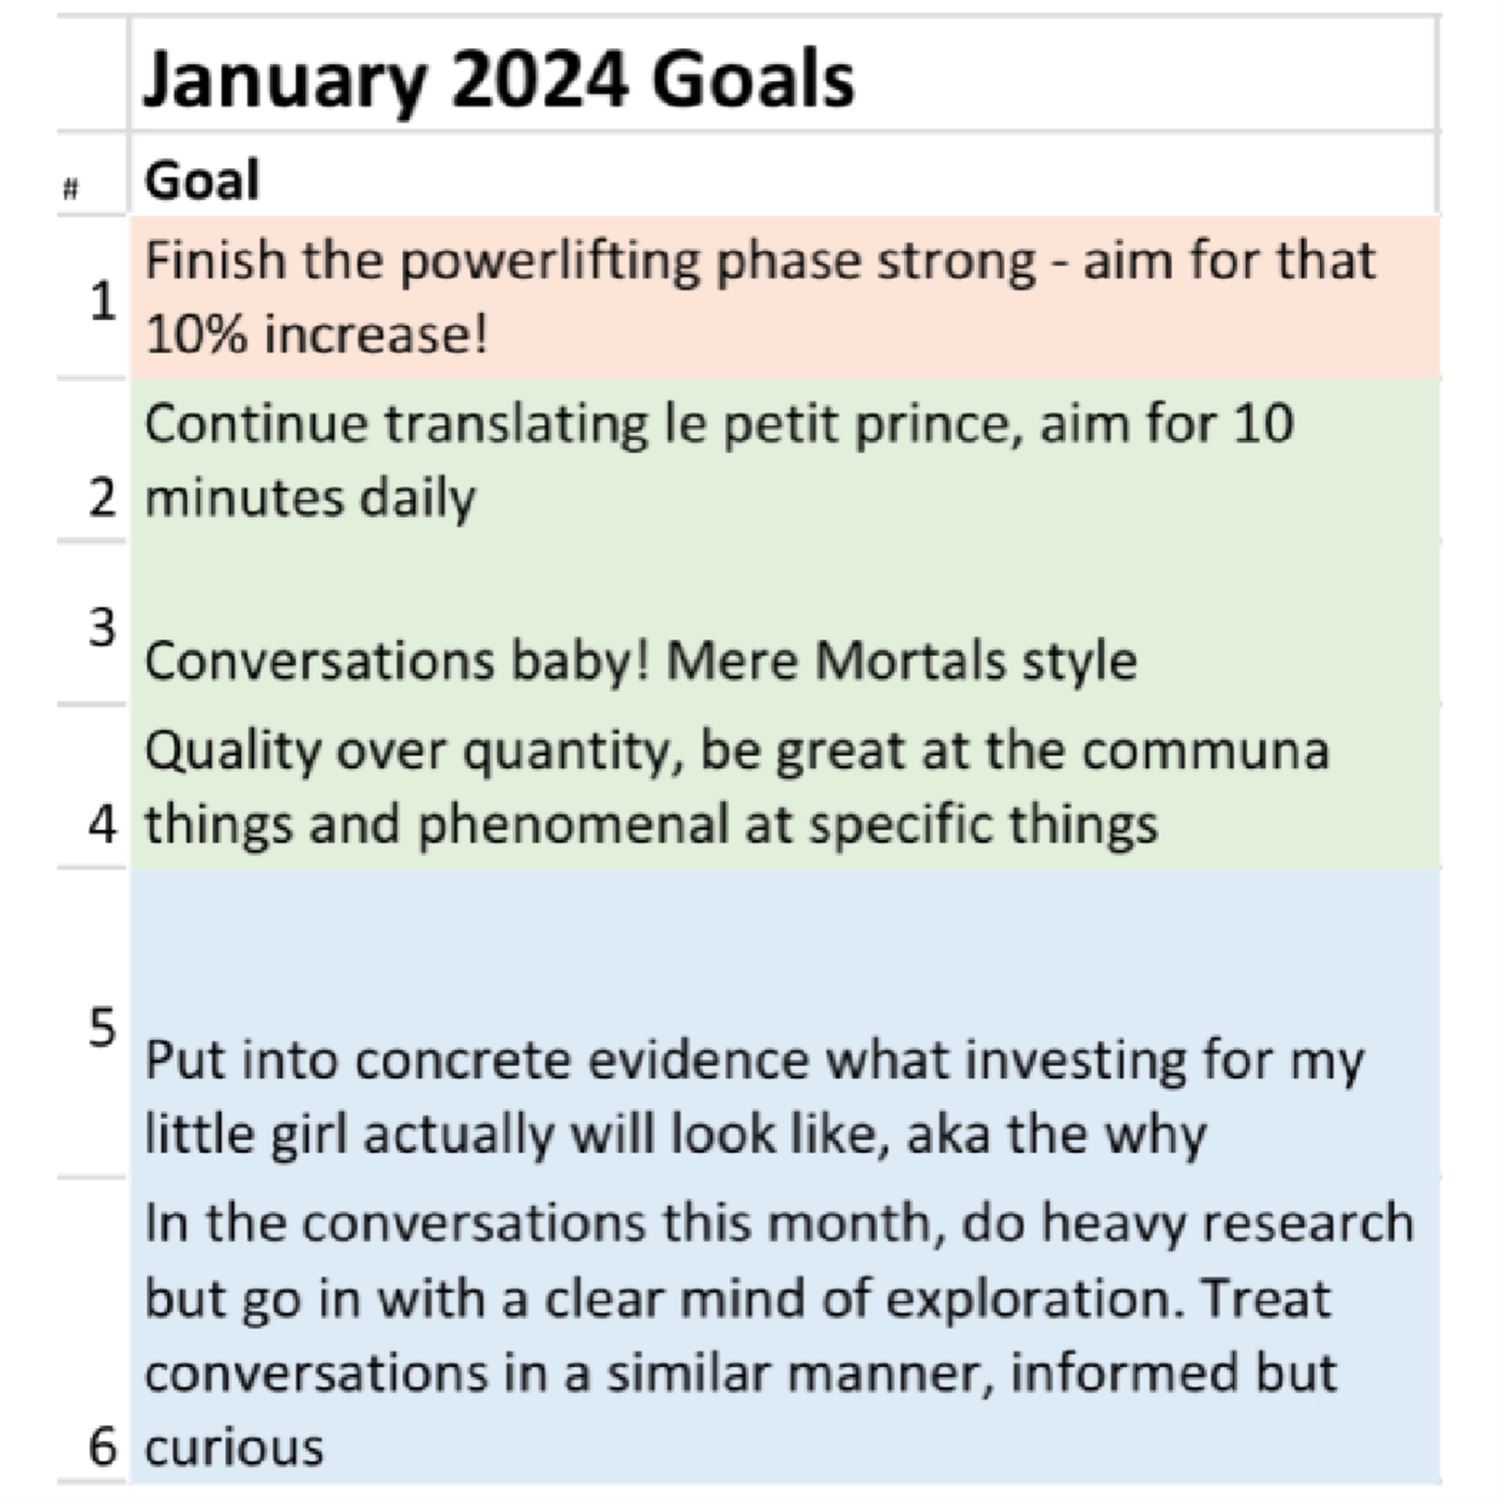 Juan's January 2024 Goals